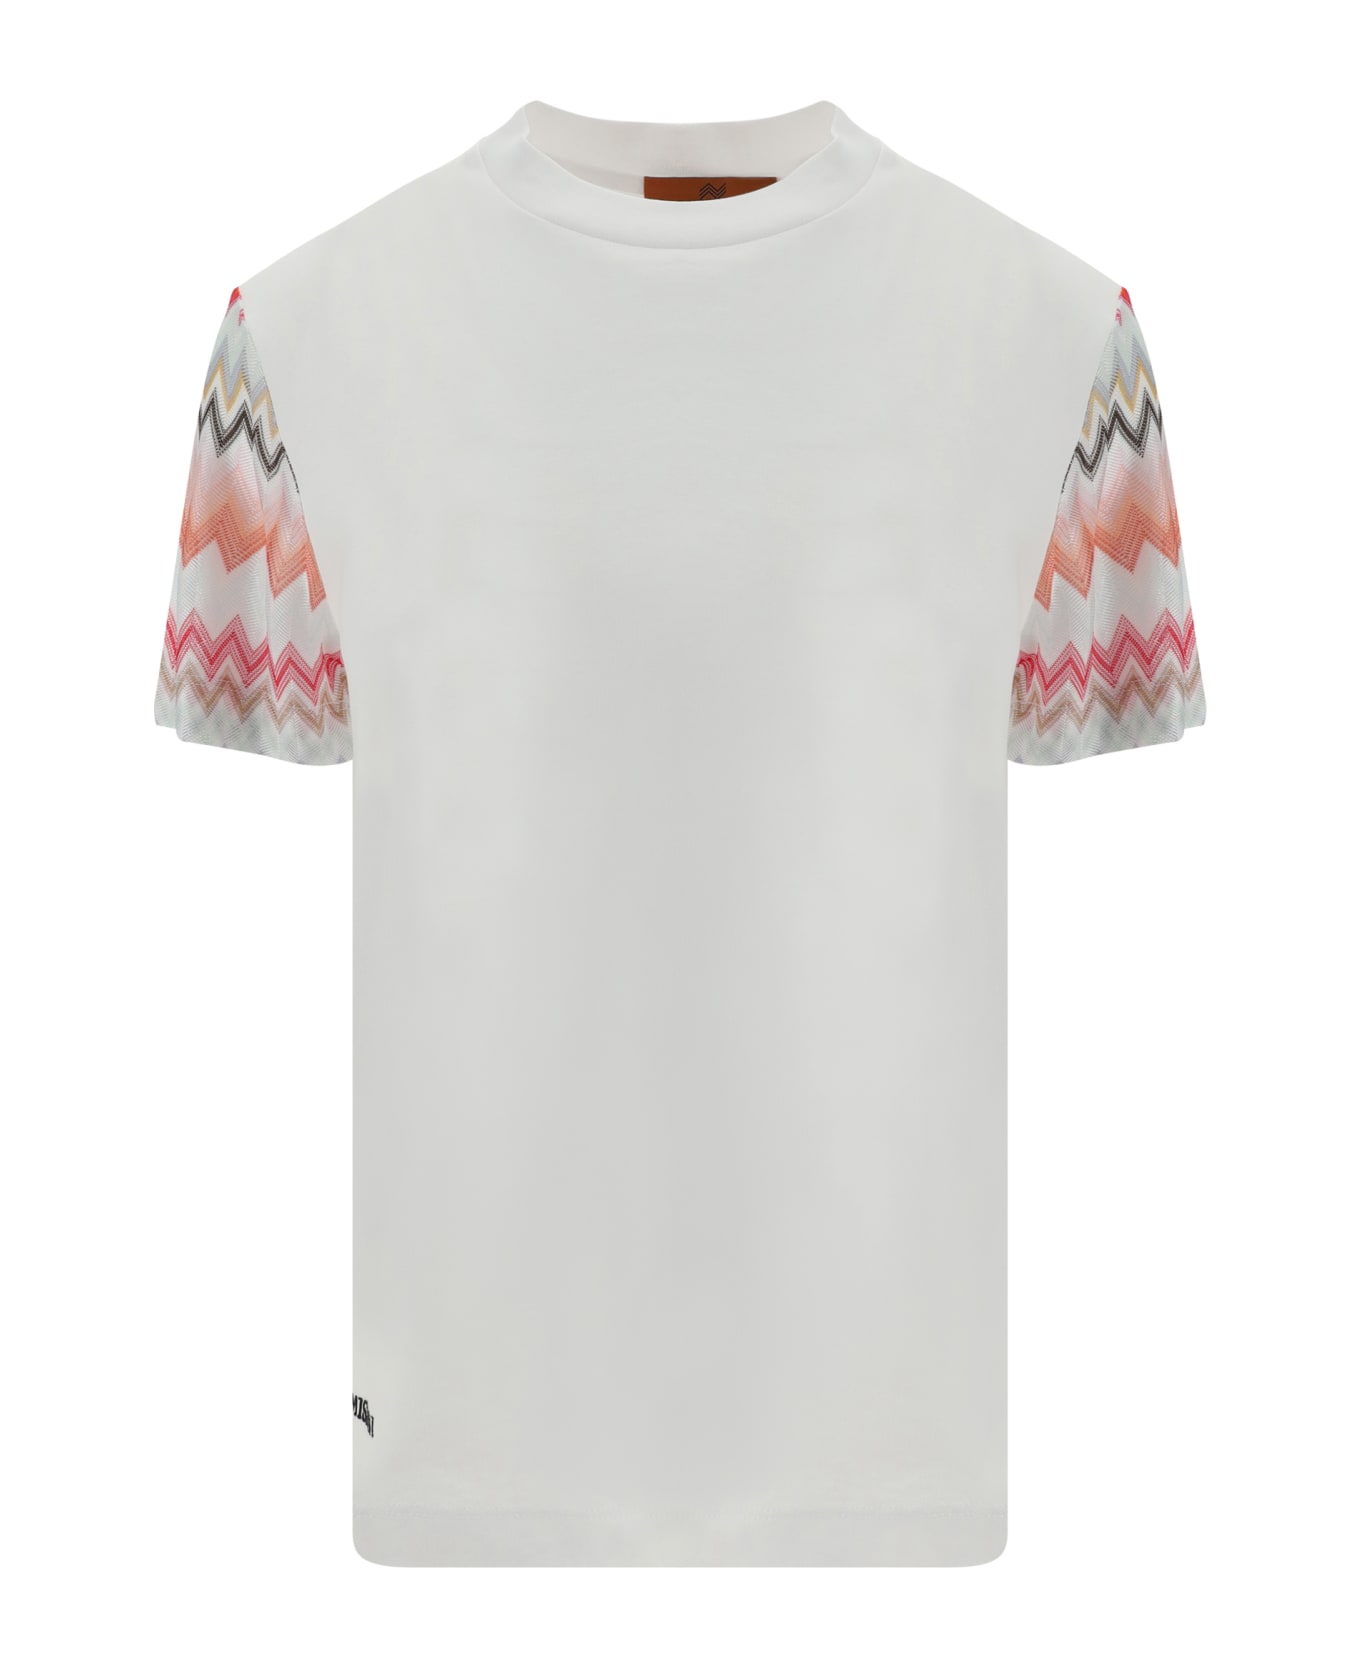 Missoni T-shirt - White Tシャツ